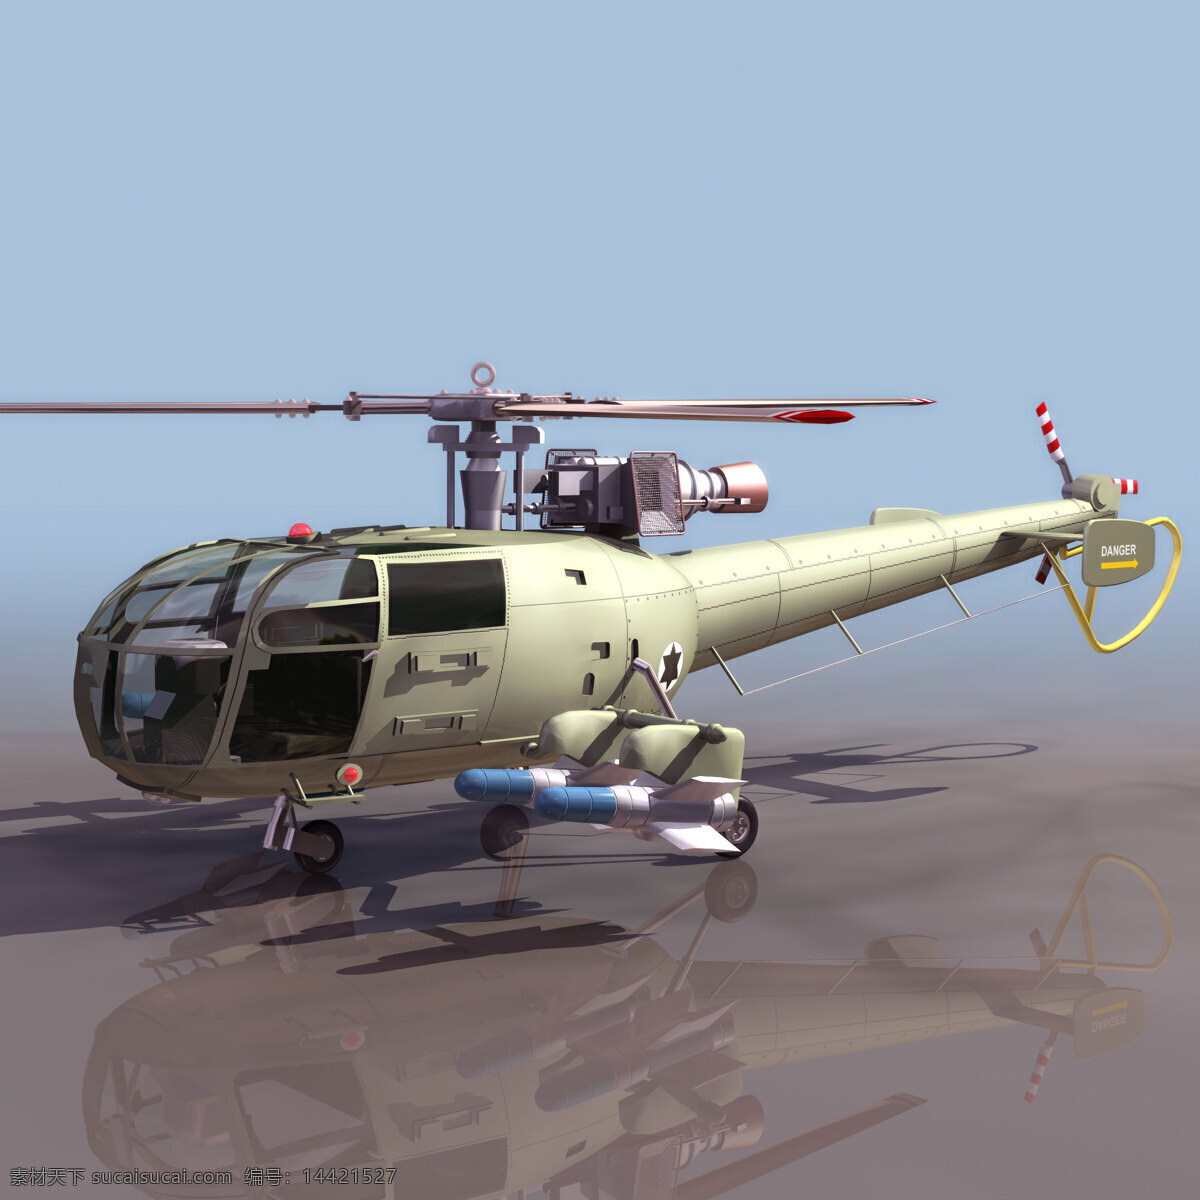 直升机 模型 alouette 军事模型 直升机模型 空军武器库 3d模型素材 其他3d模型